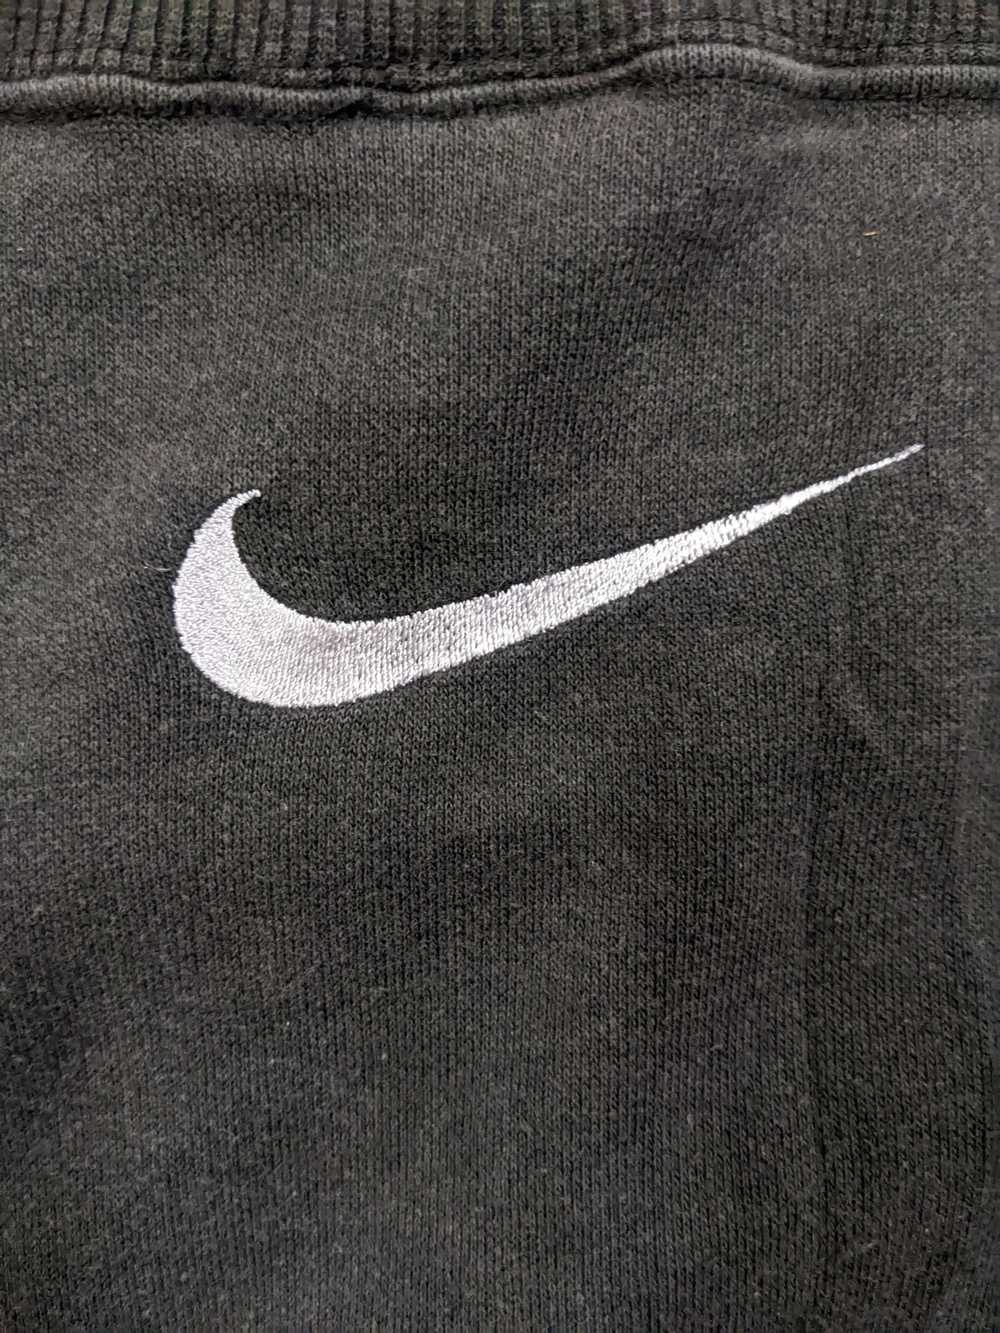 Nike × Streetwear × Vintage Vintage Nike Big Swoo… - image 4